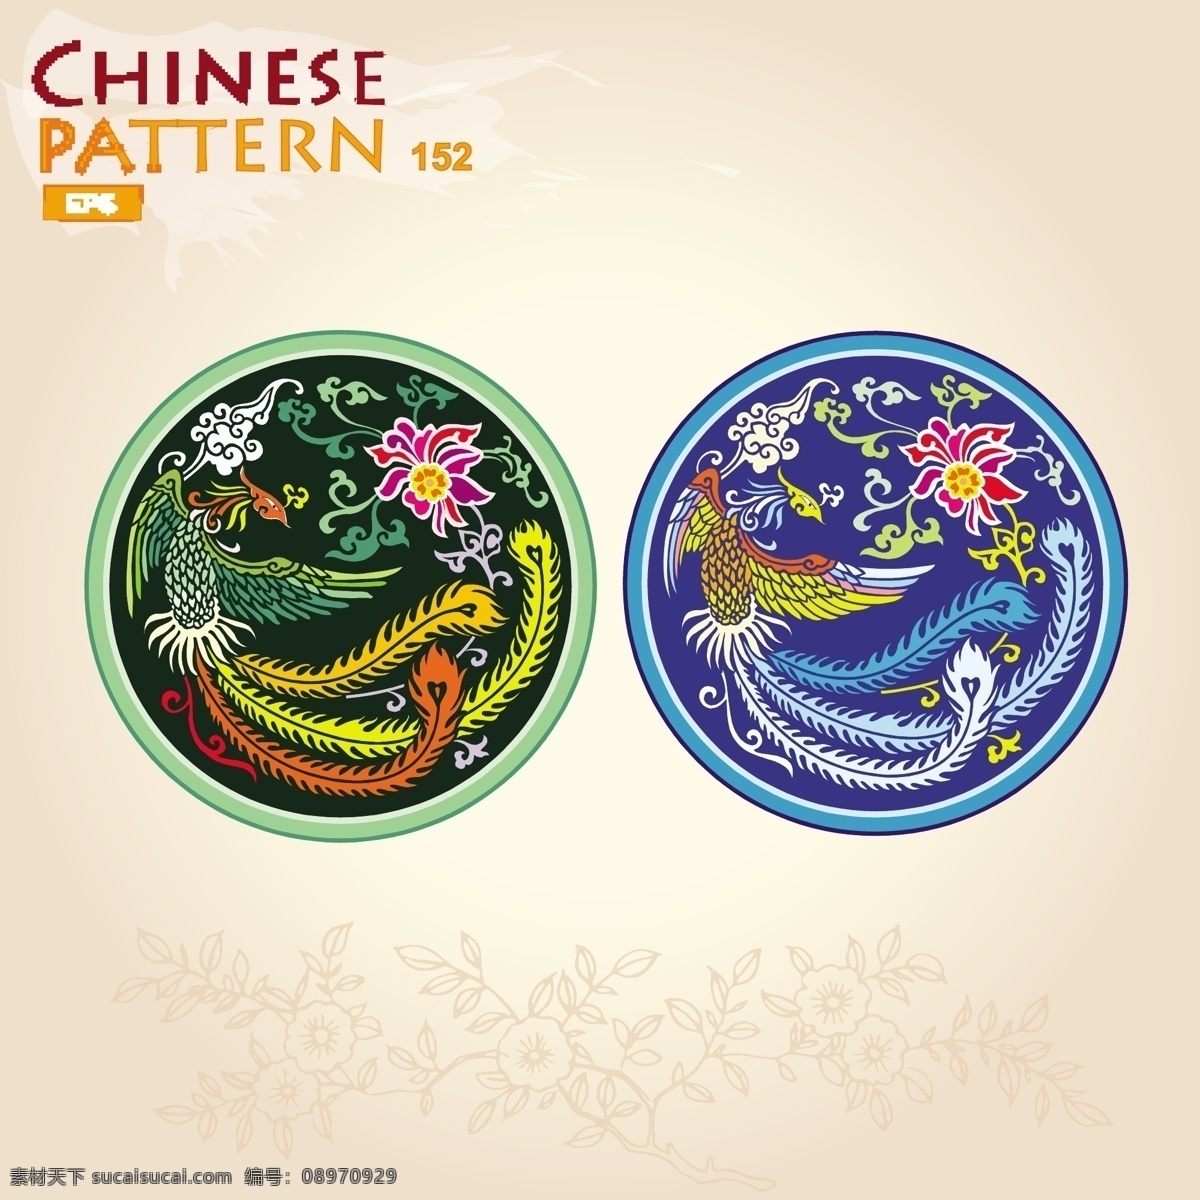 中国元素 中国传统素材 手绘 边框 相框 龙 印章 中国龙 中国凤凰 凤凰 中国风 矢量